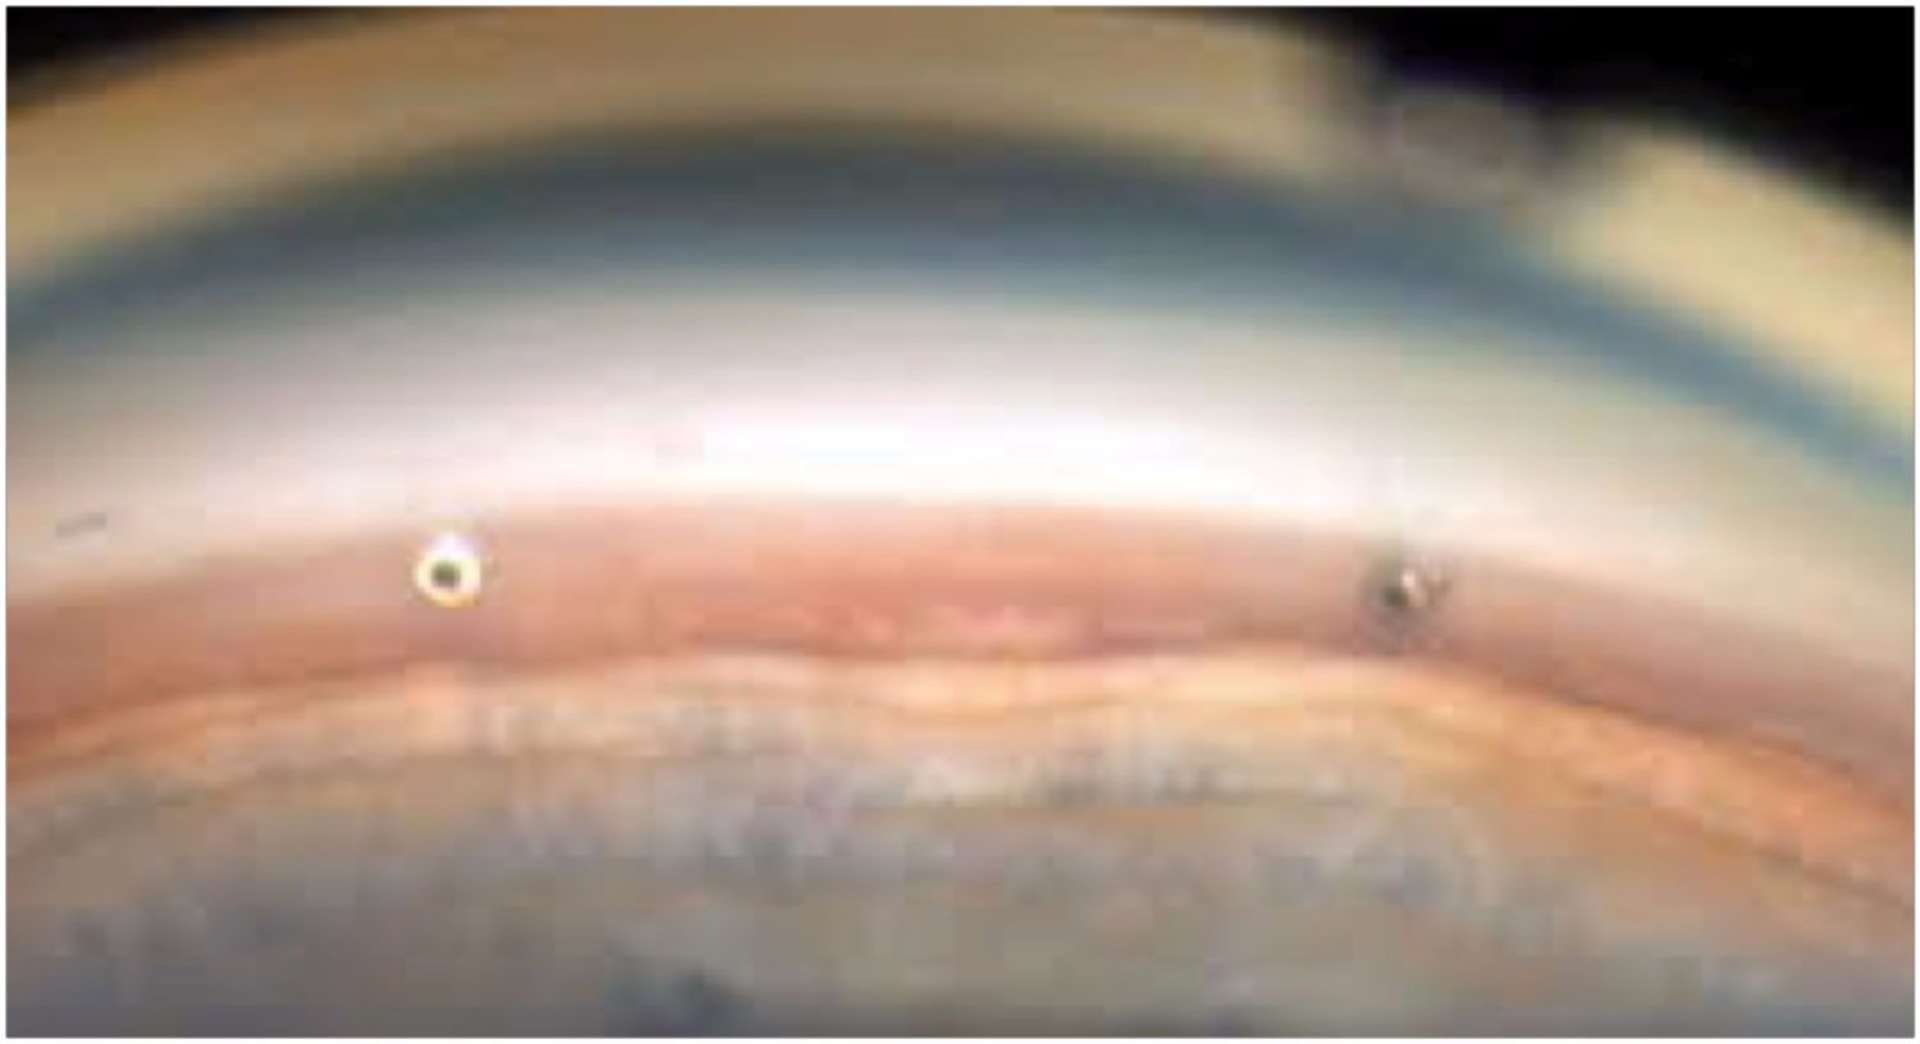 Figure 2. Vue gonioscopique après l’insertion dans le quadrant nasal inférieur de 2 drains iStent inject. 
